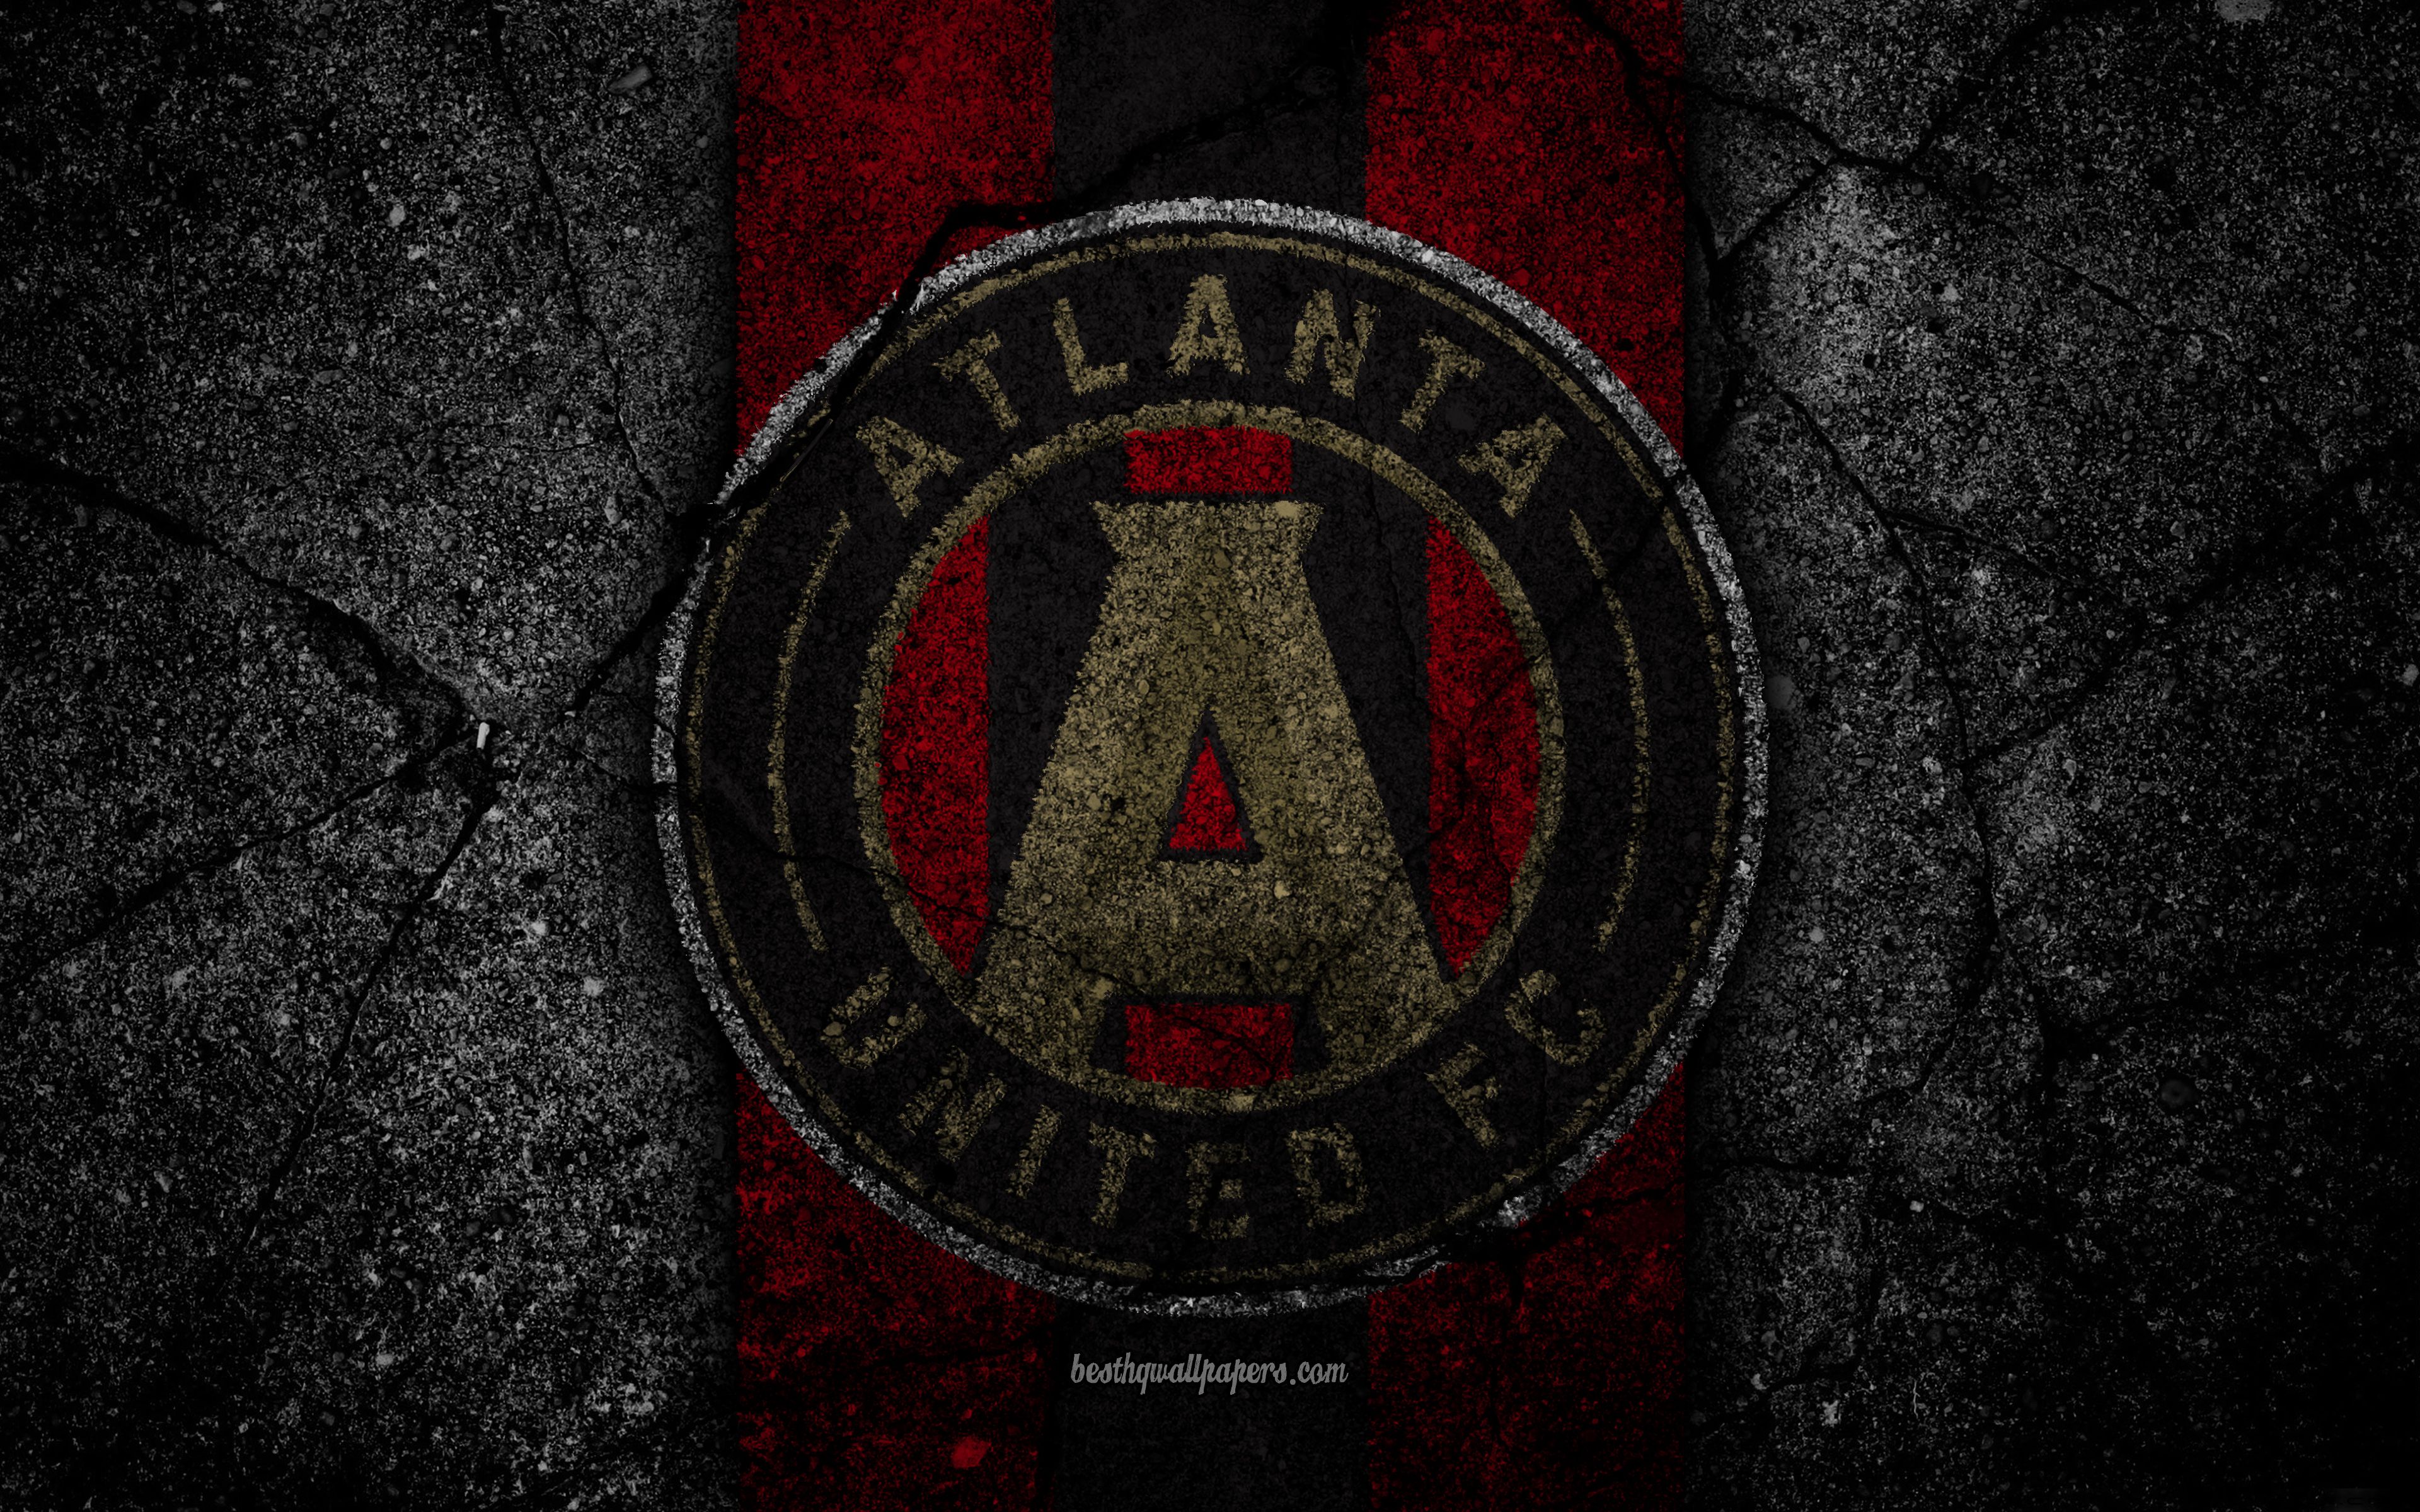 Download wallpaper 4k, Atlanta United FC, MLS, asphalt texture